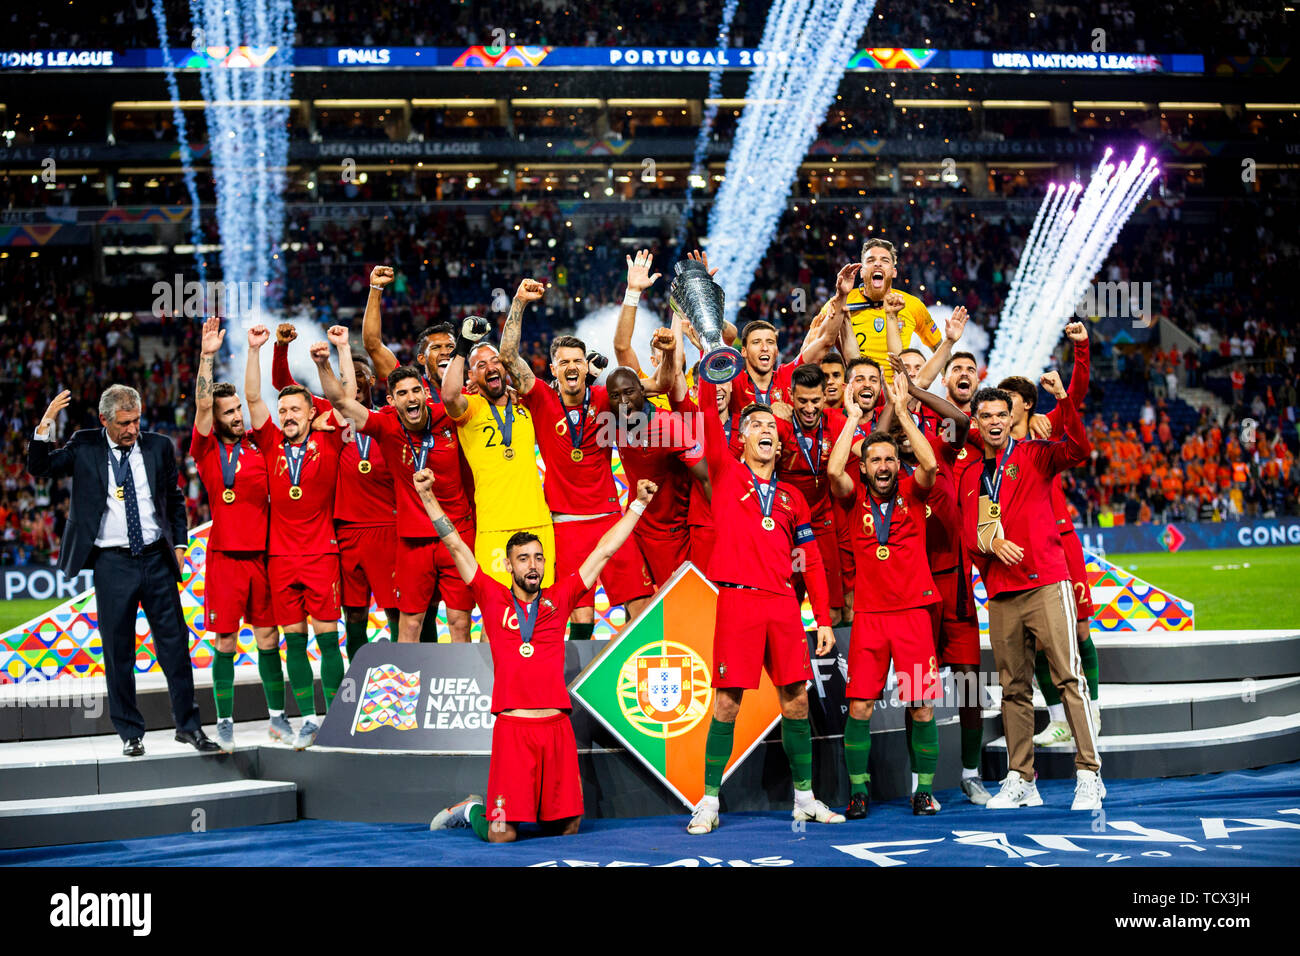 Das portugiesische Team mit der Trophäe, während der UEFA Nationen League Finale im Dragon Stadion in Porto, Portugal (Portugal 1:0 Niederlande). Stockfoto